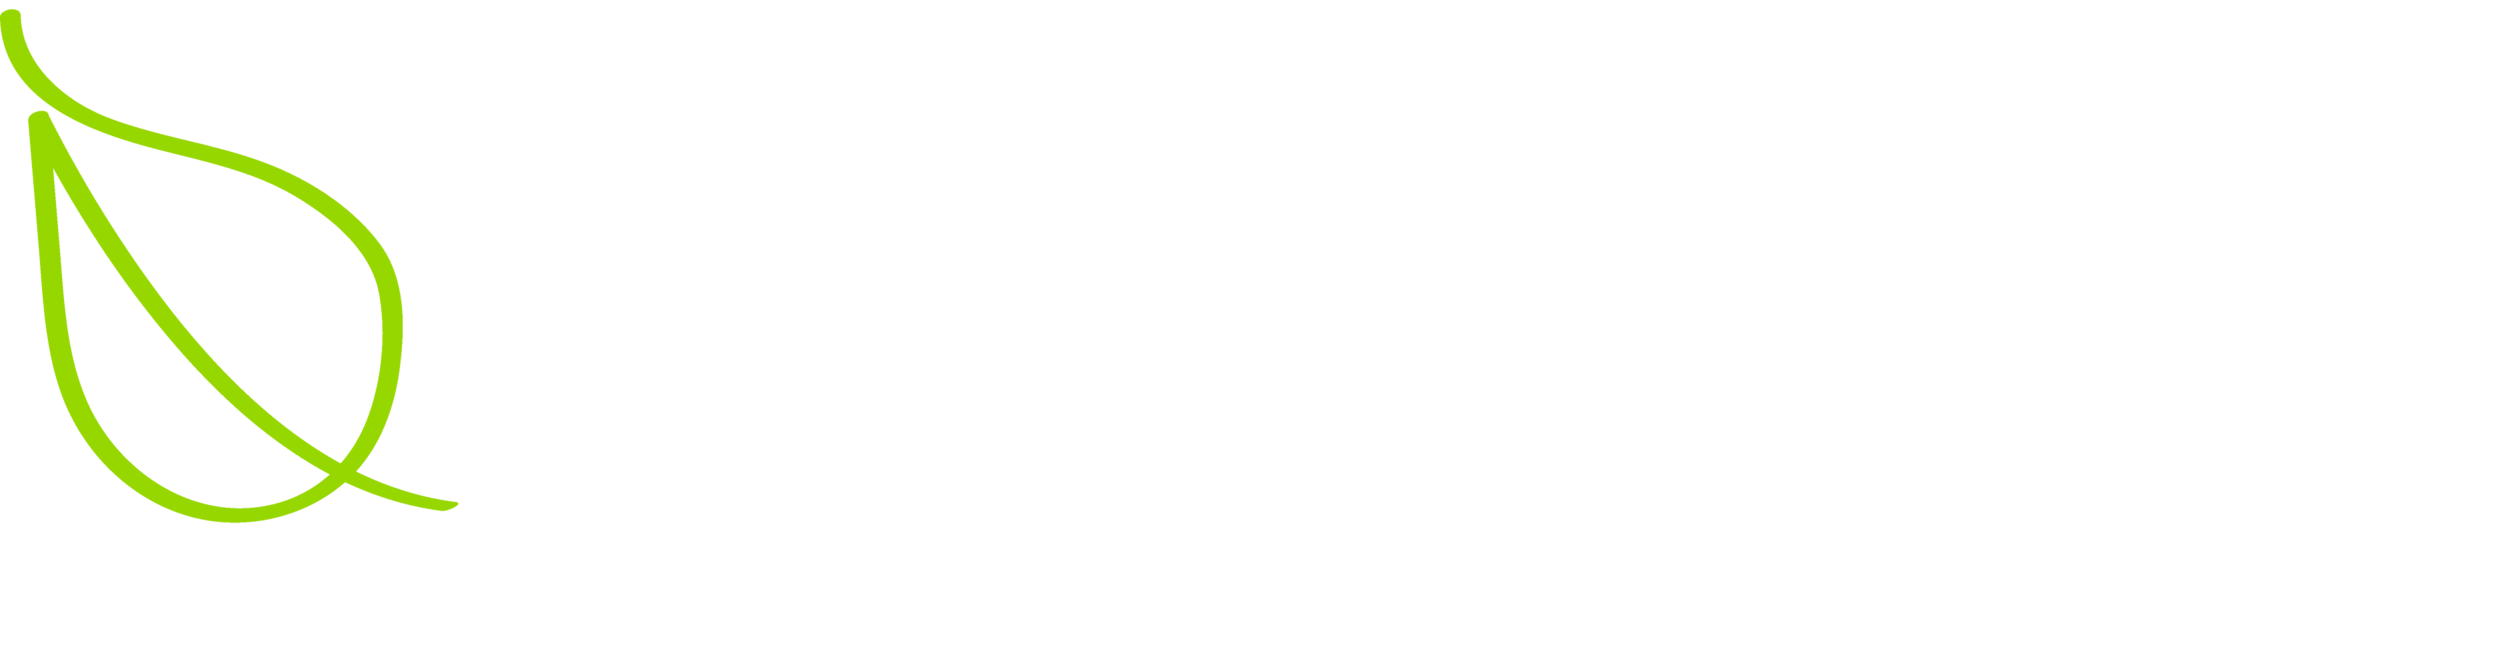 Broadleaf Company LLC